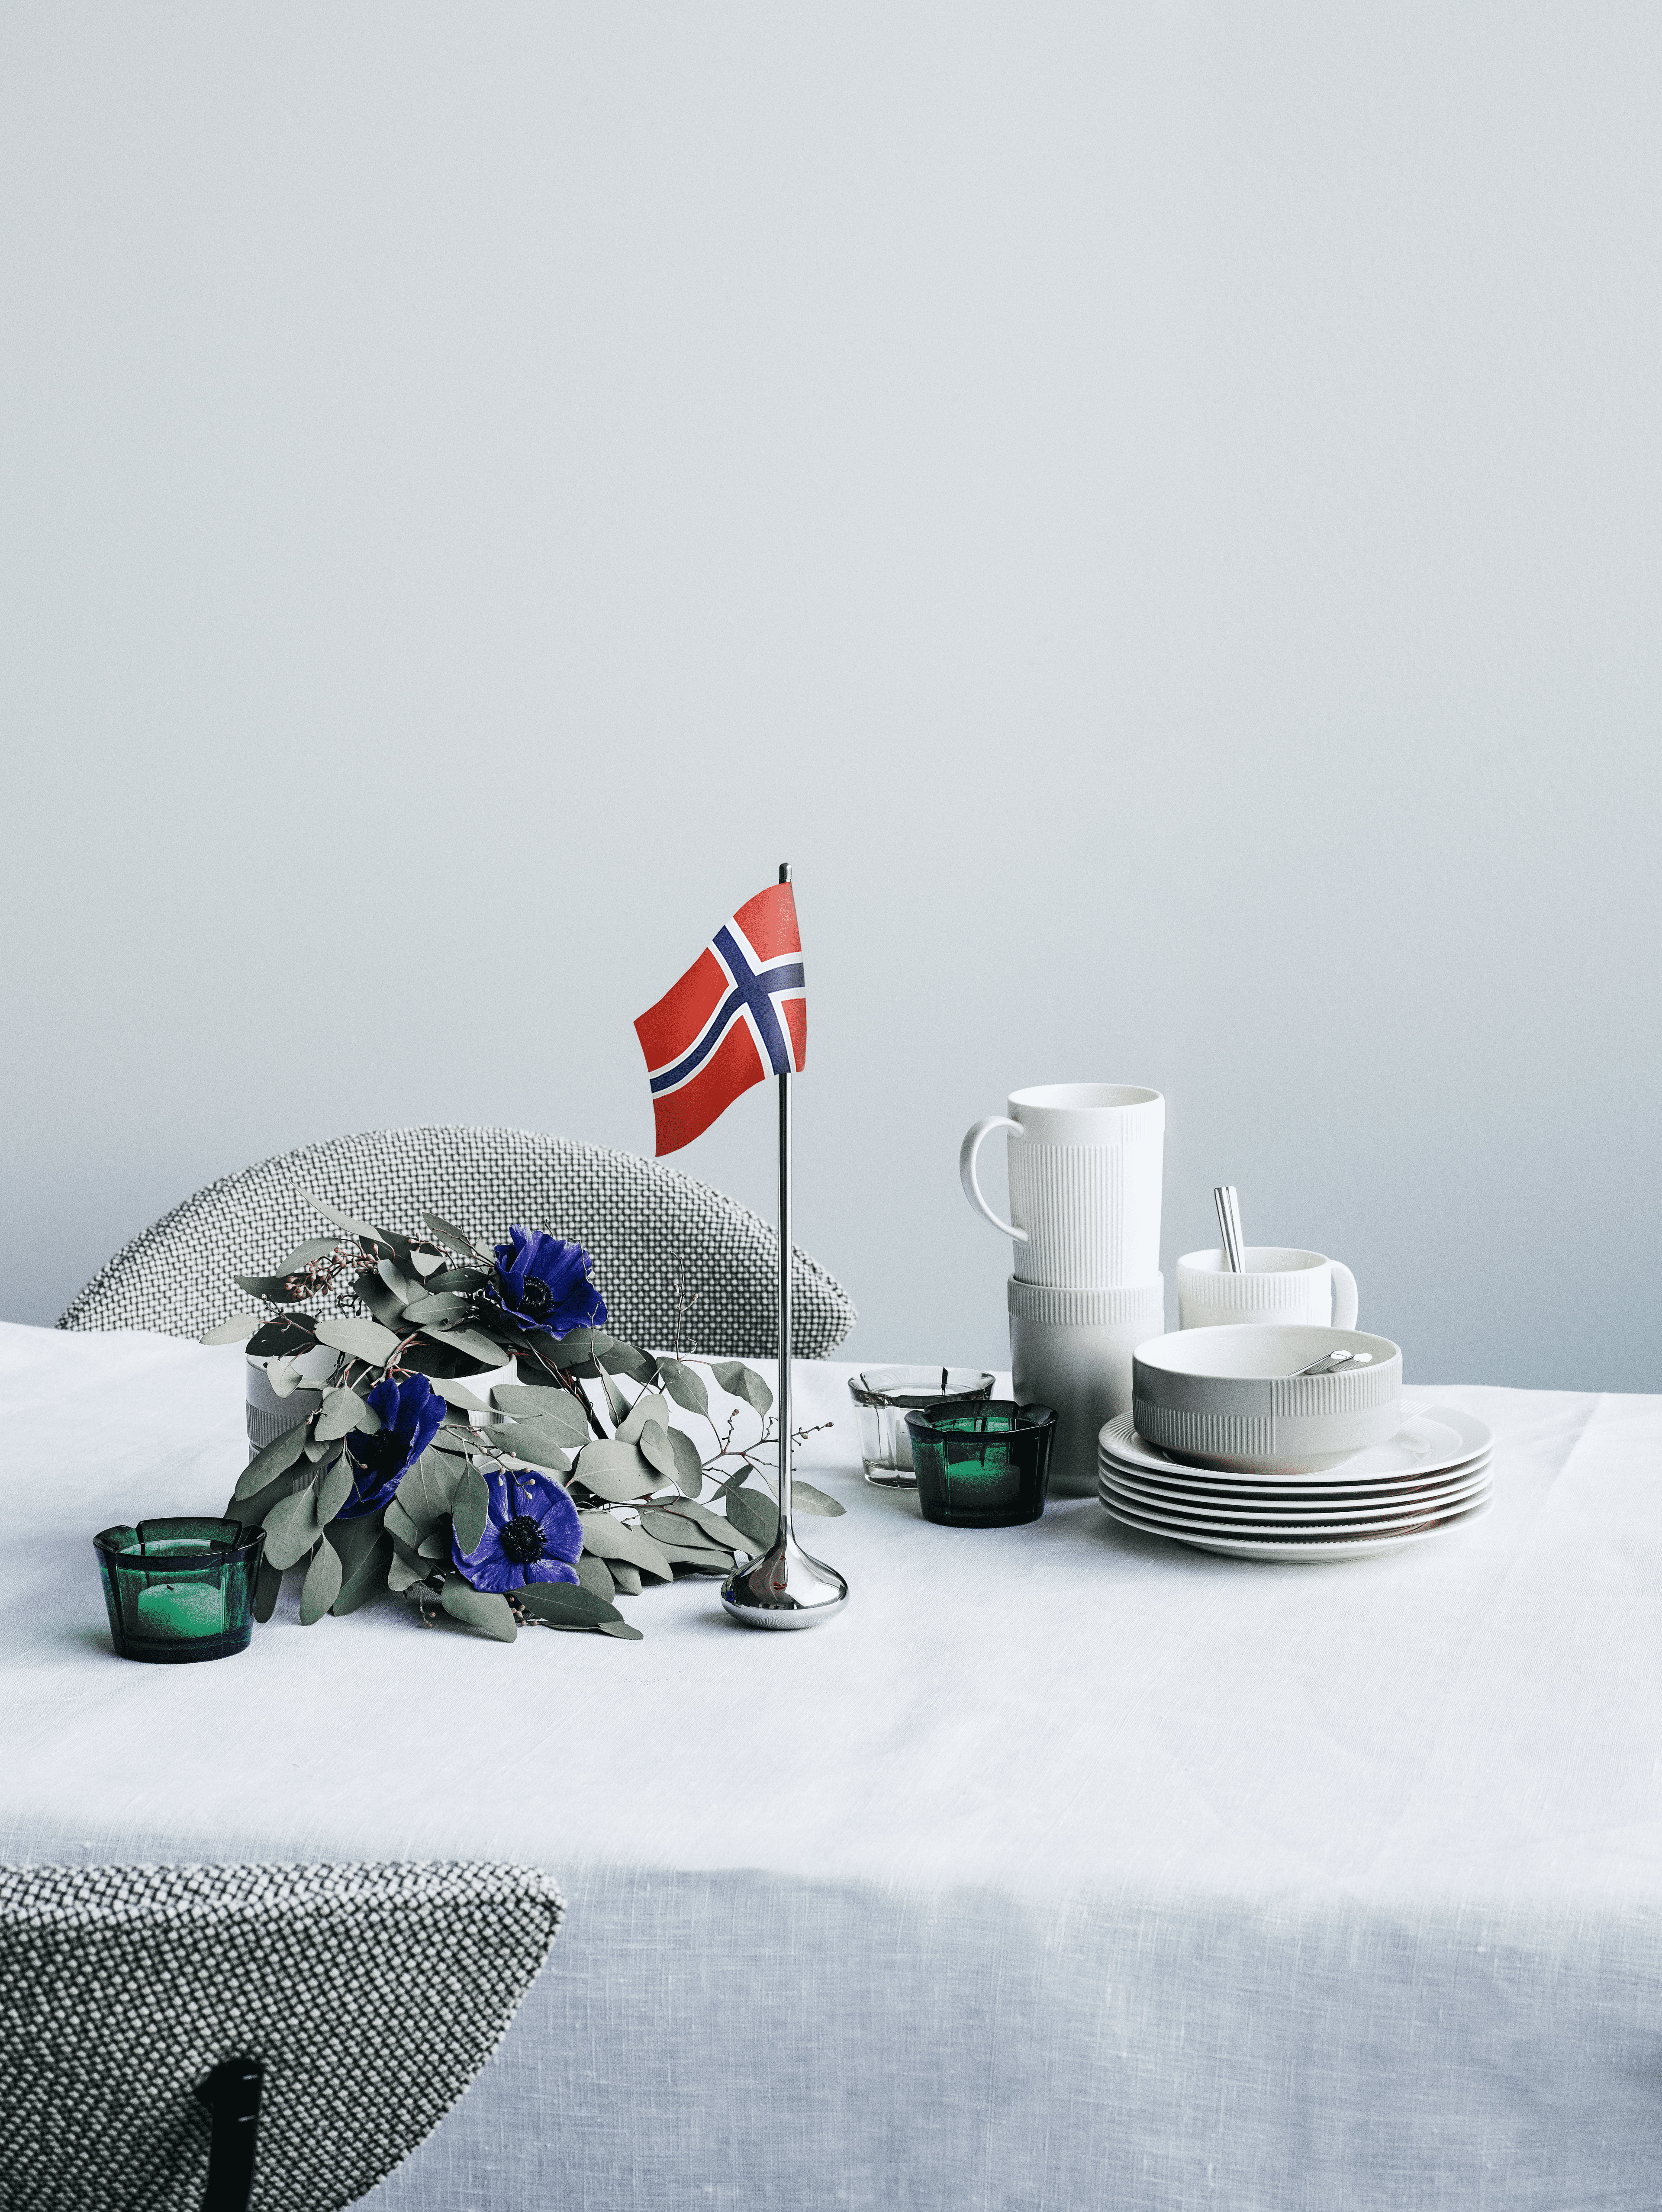 Bordsflagga norsk H35